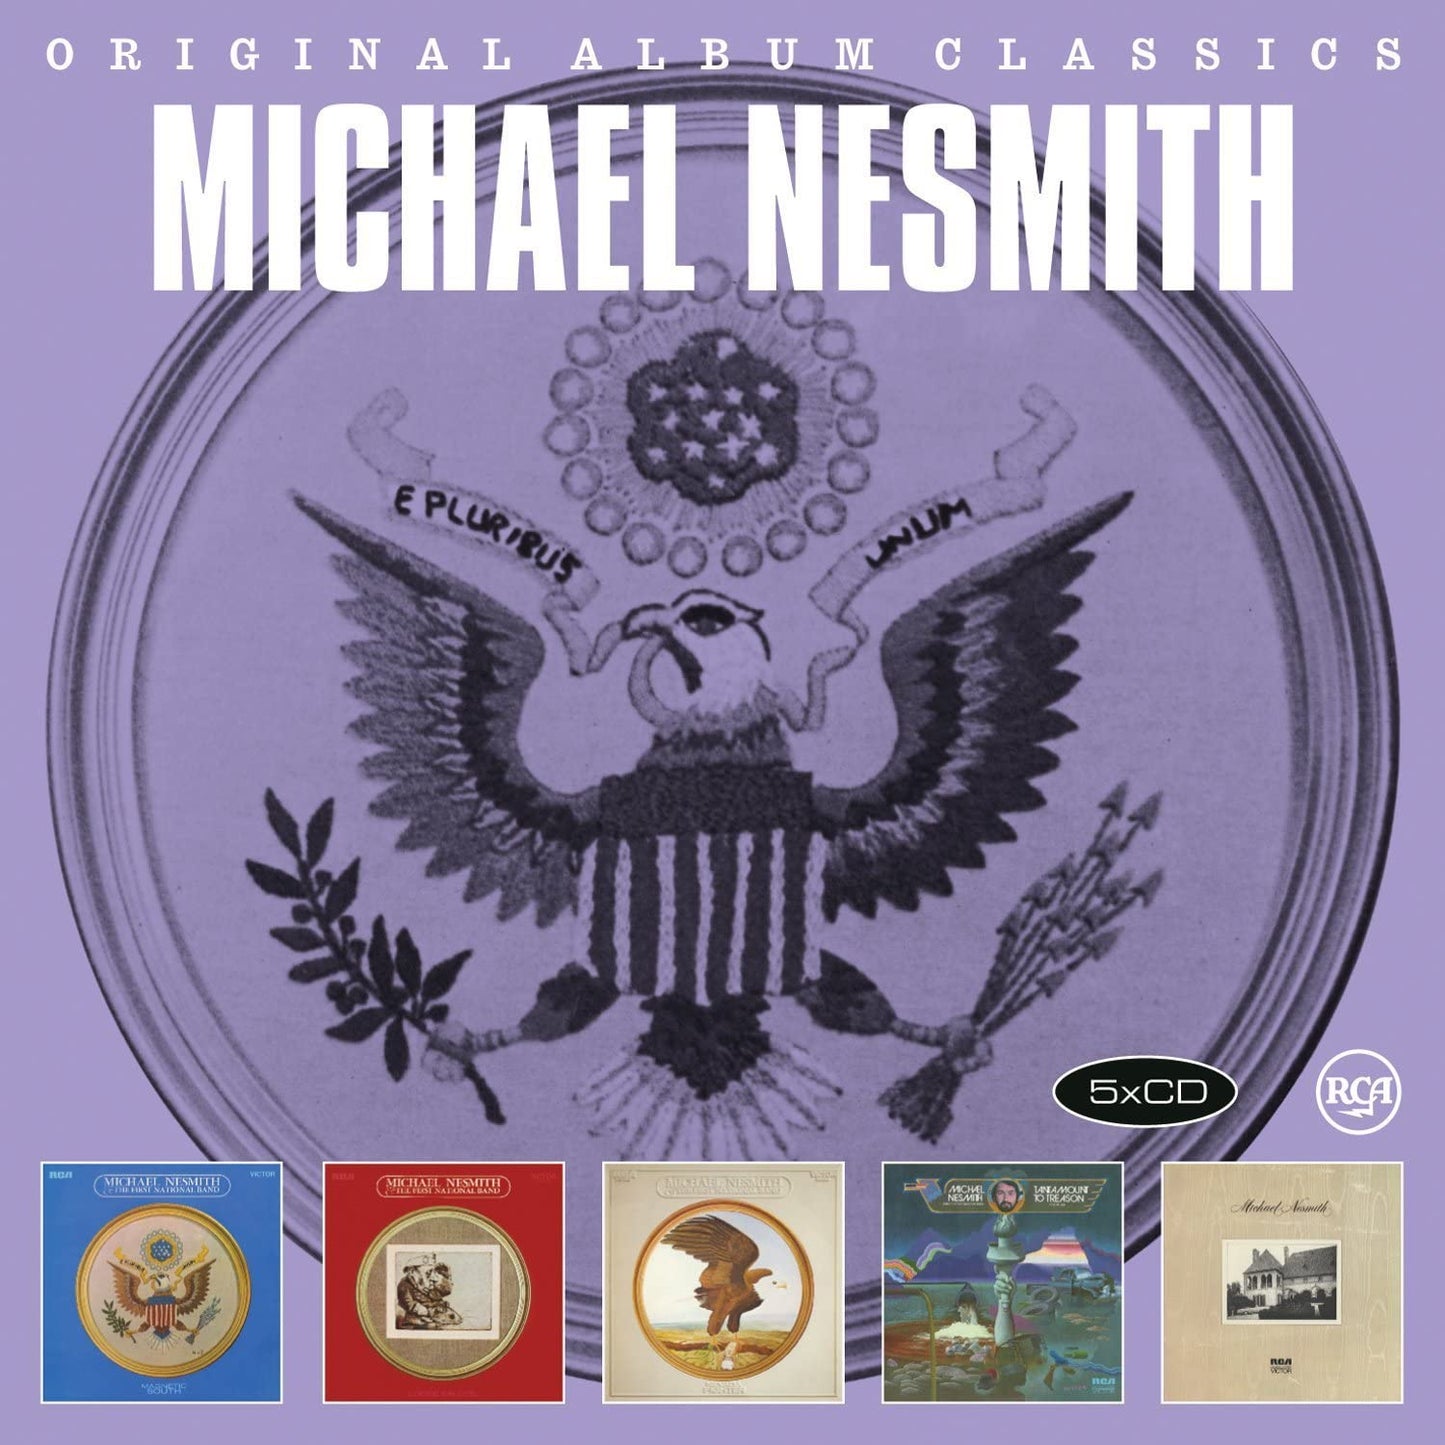 Michael Nesmith - Original Album Classics - 5CD